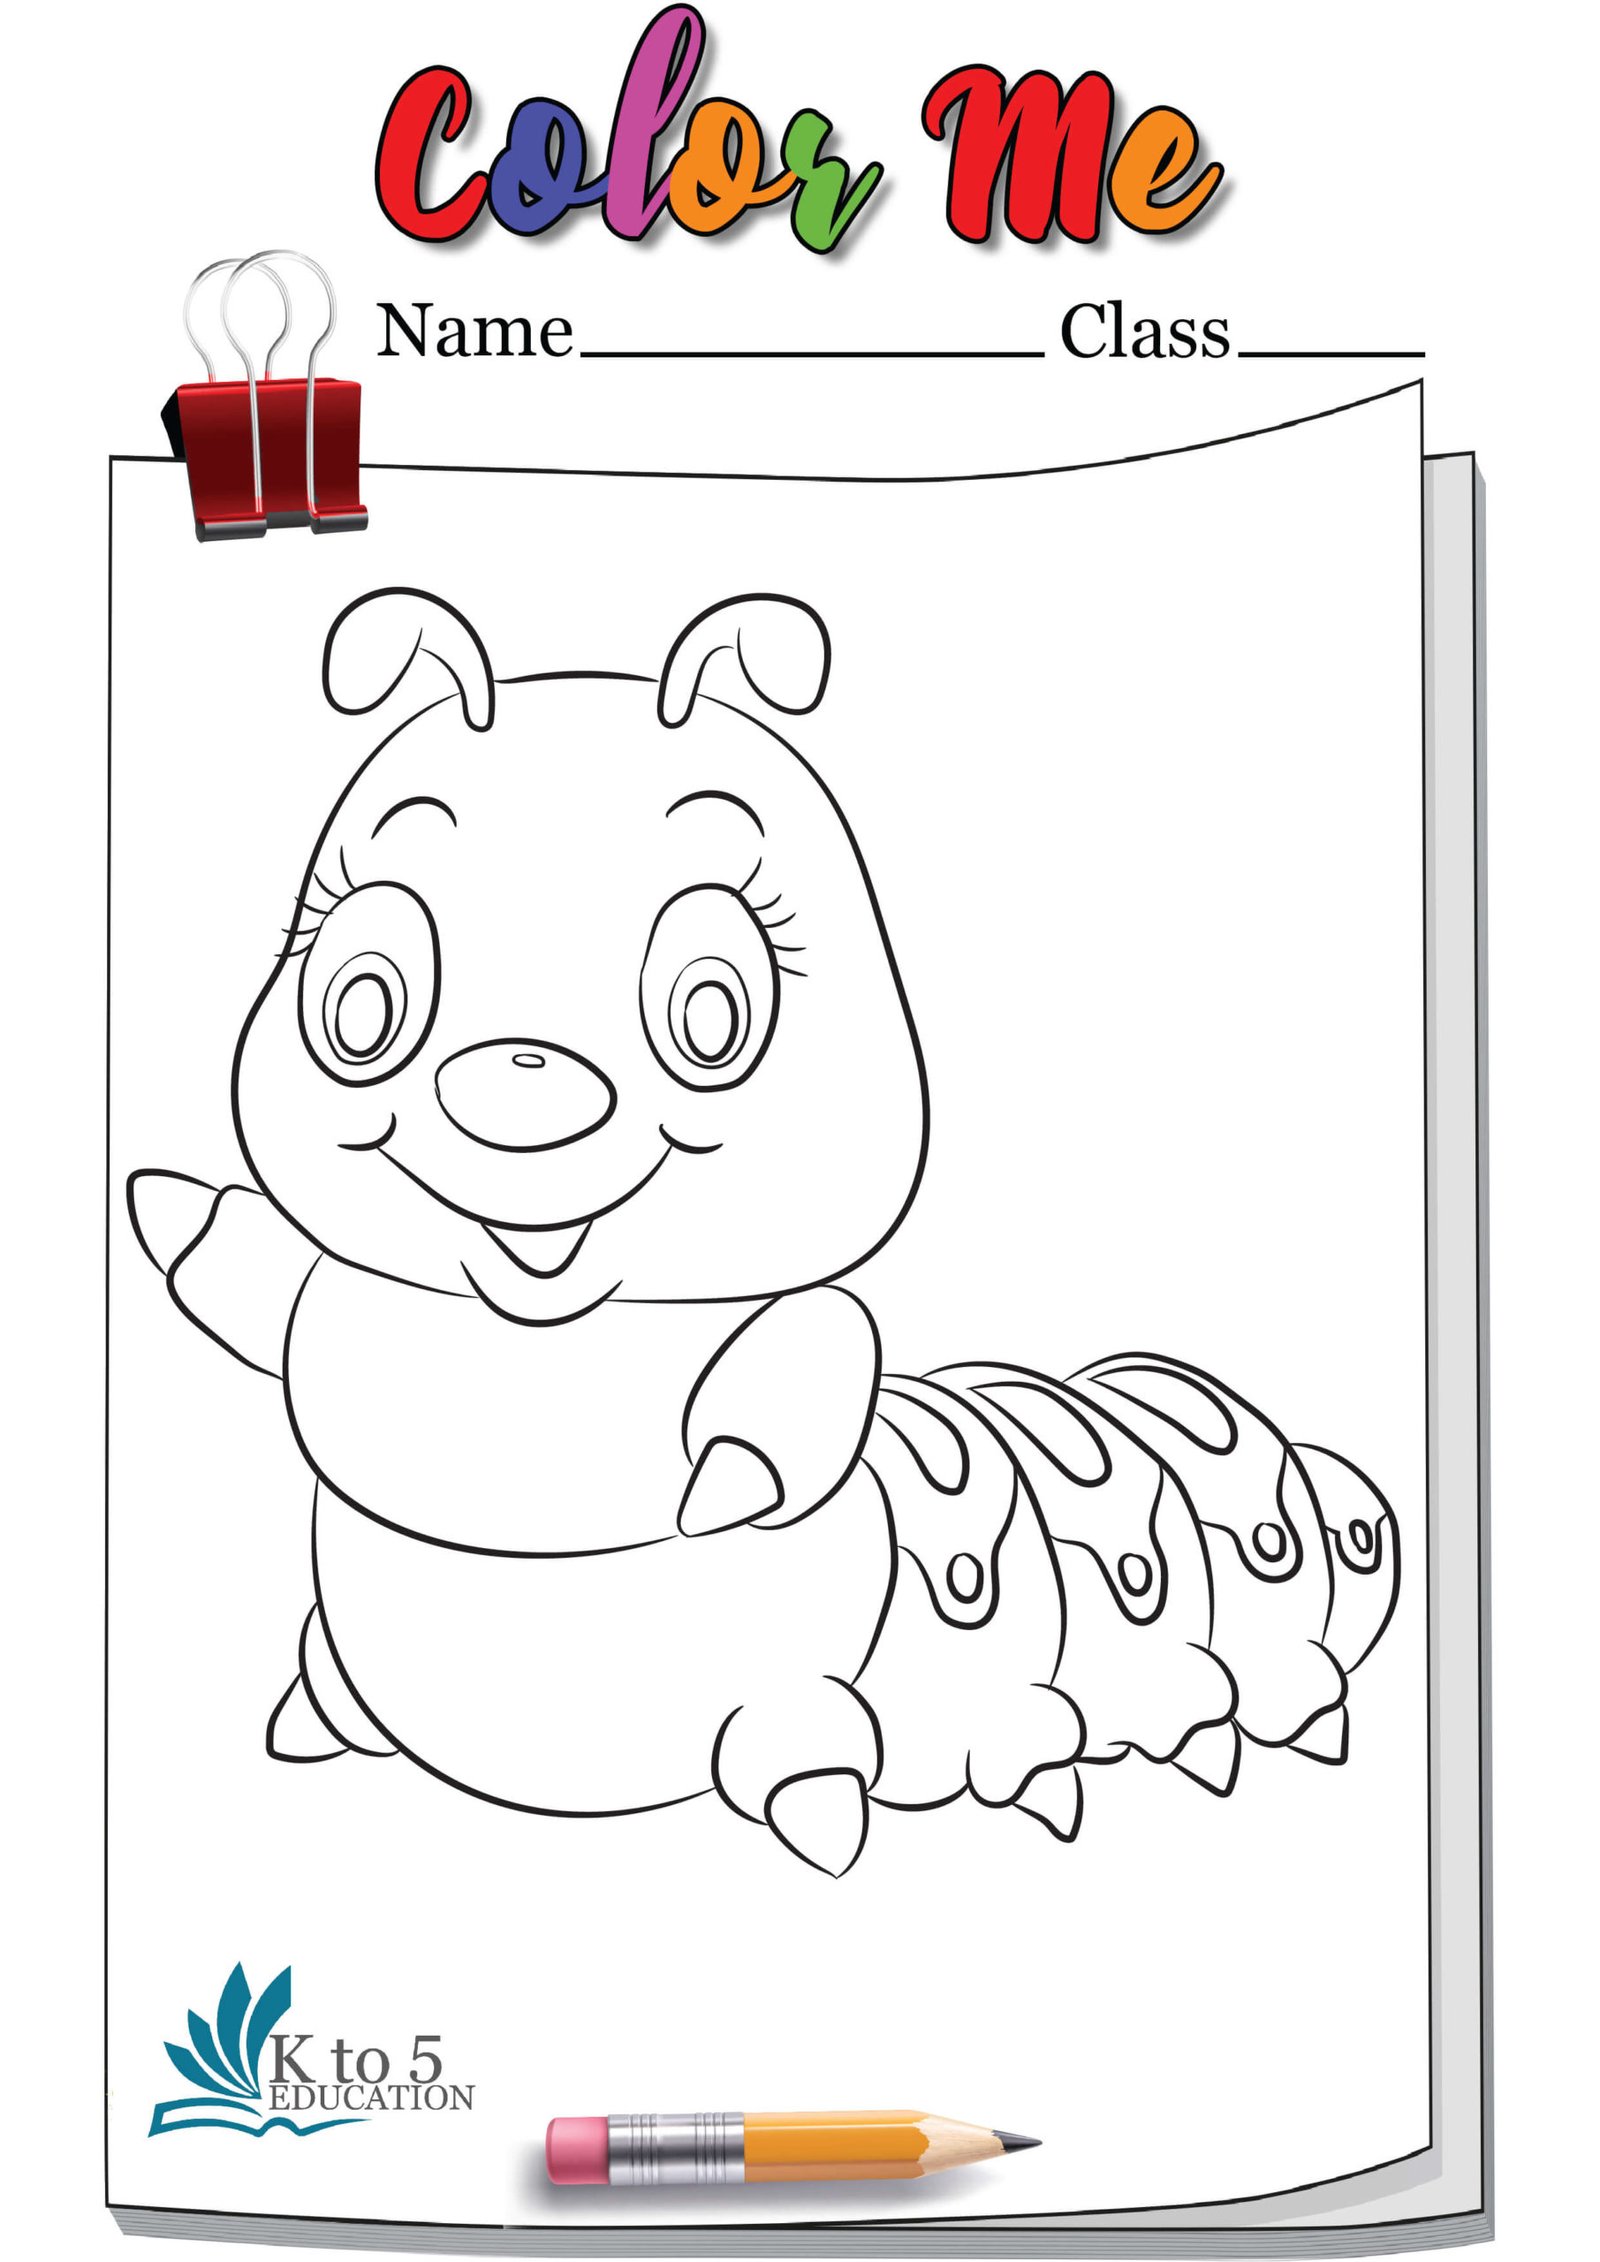 Smiling Caterpillar coloring page worksheet